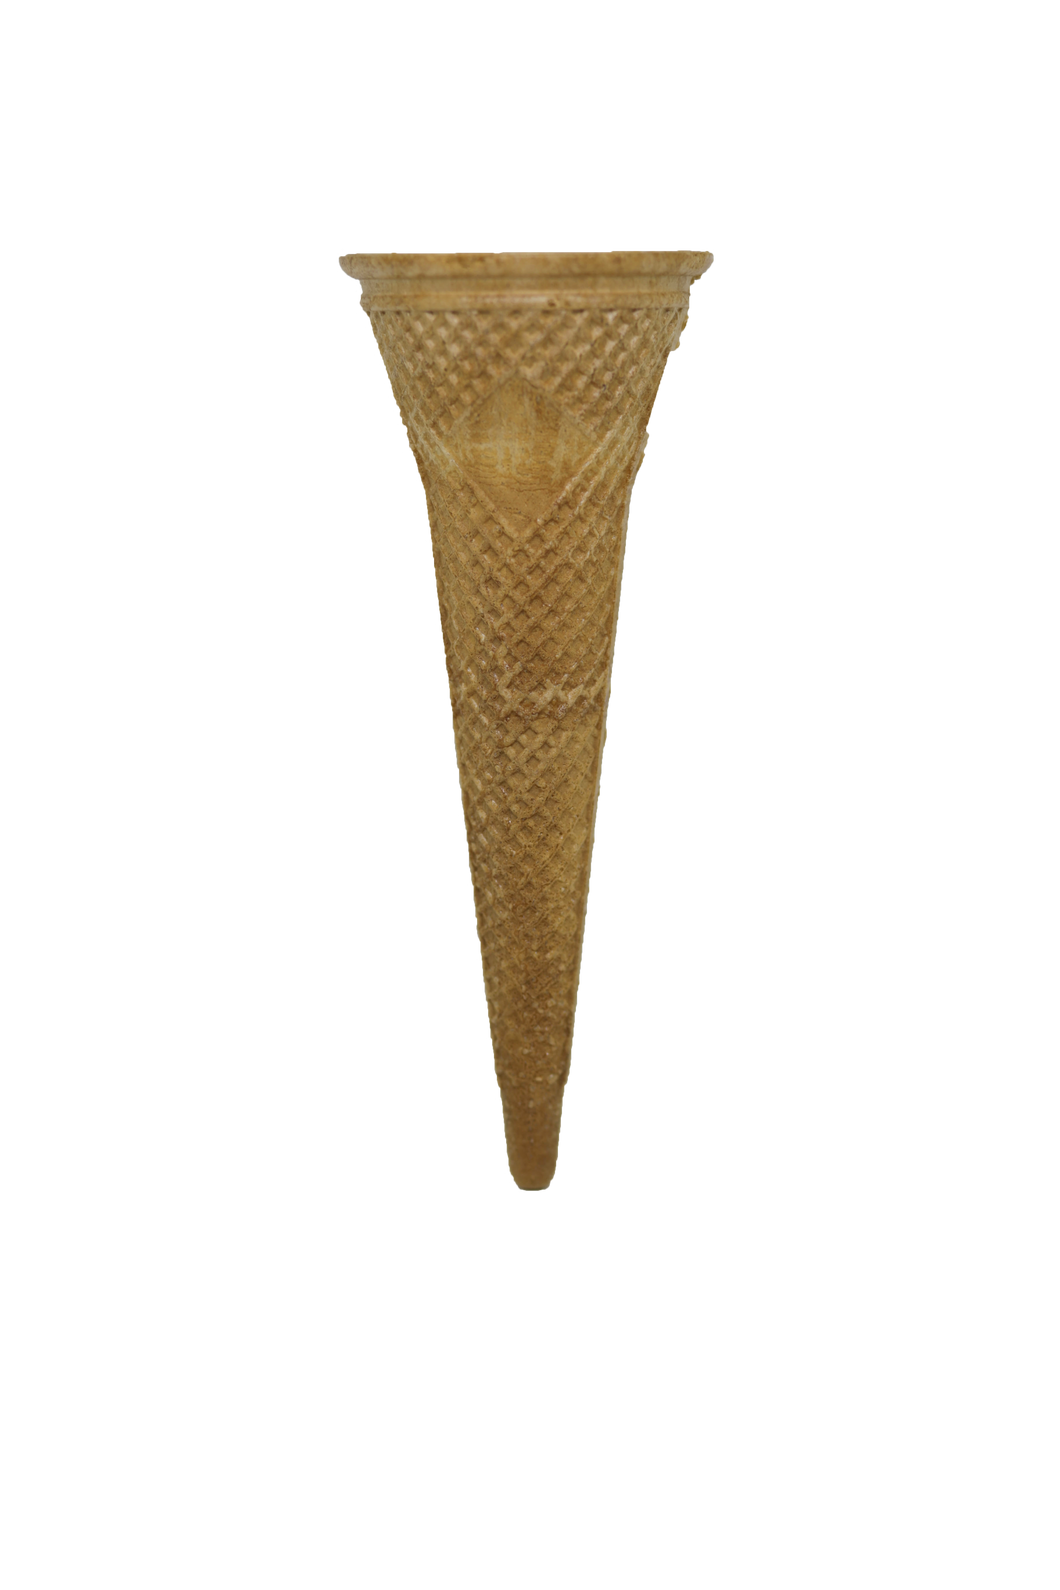 Torch Gelato Ice Cream Cones 7 Classic